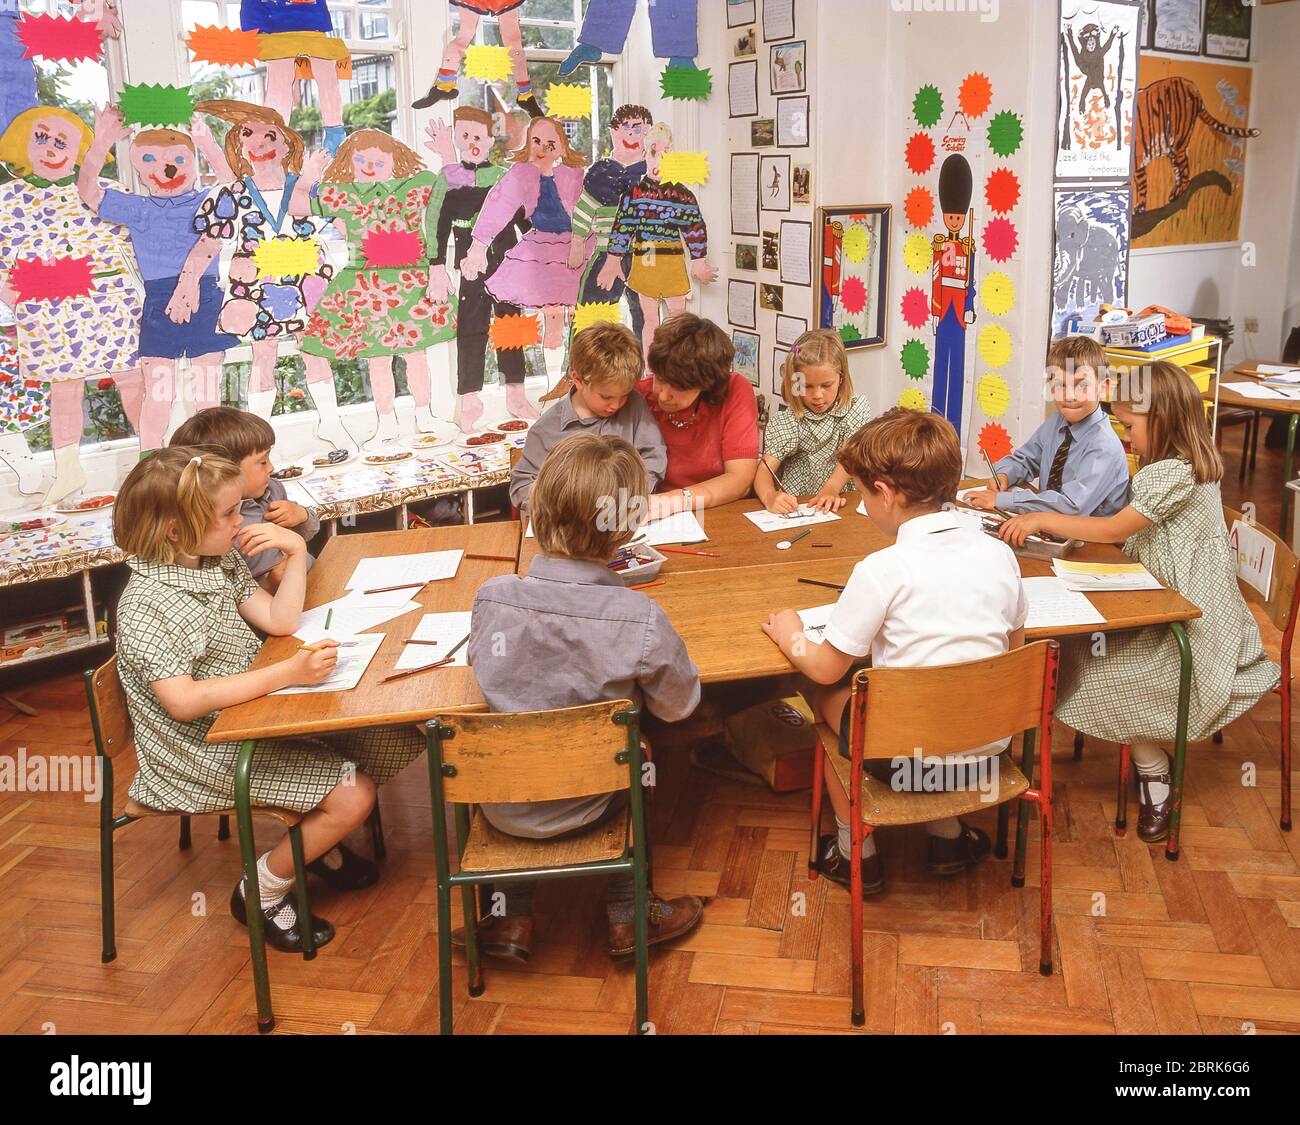 Enseignant aidant les élèves de l'école primaire en classe d'art, Surrey, Angleterre, Royaume-Uni Banque D'Images